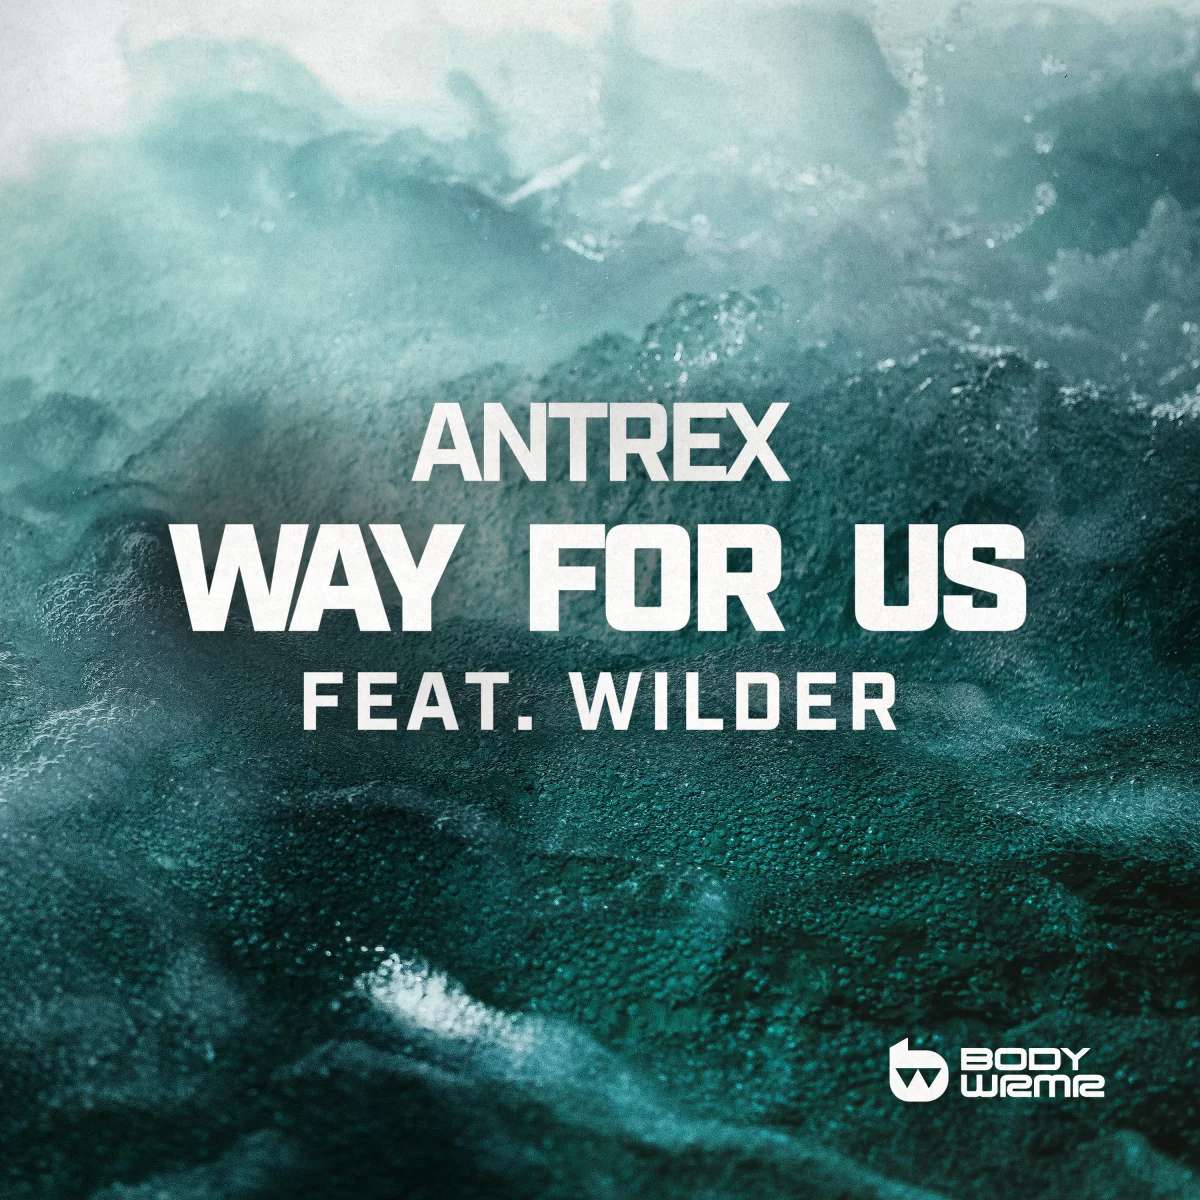 Way For Us - Antrex⁠ feat. Wilder⁠ 